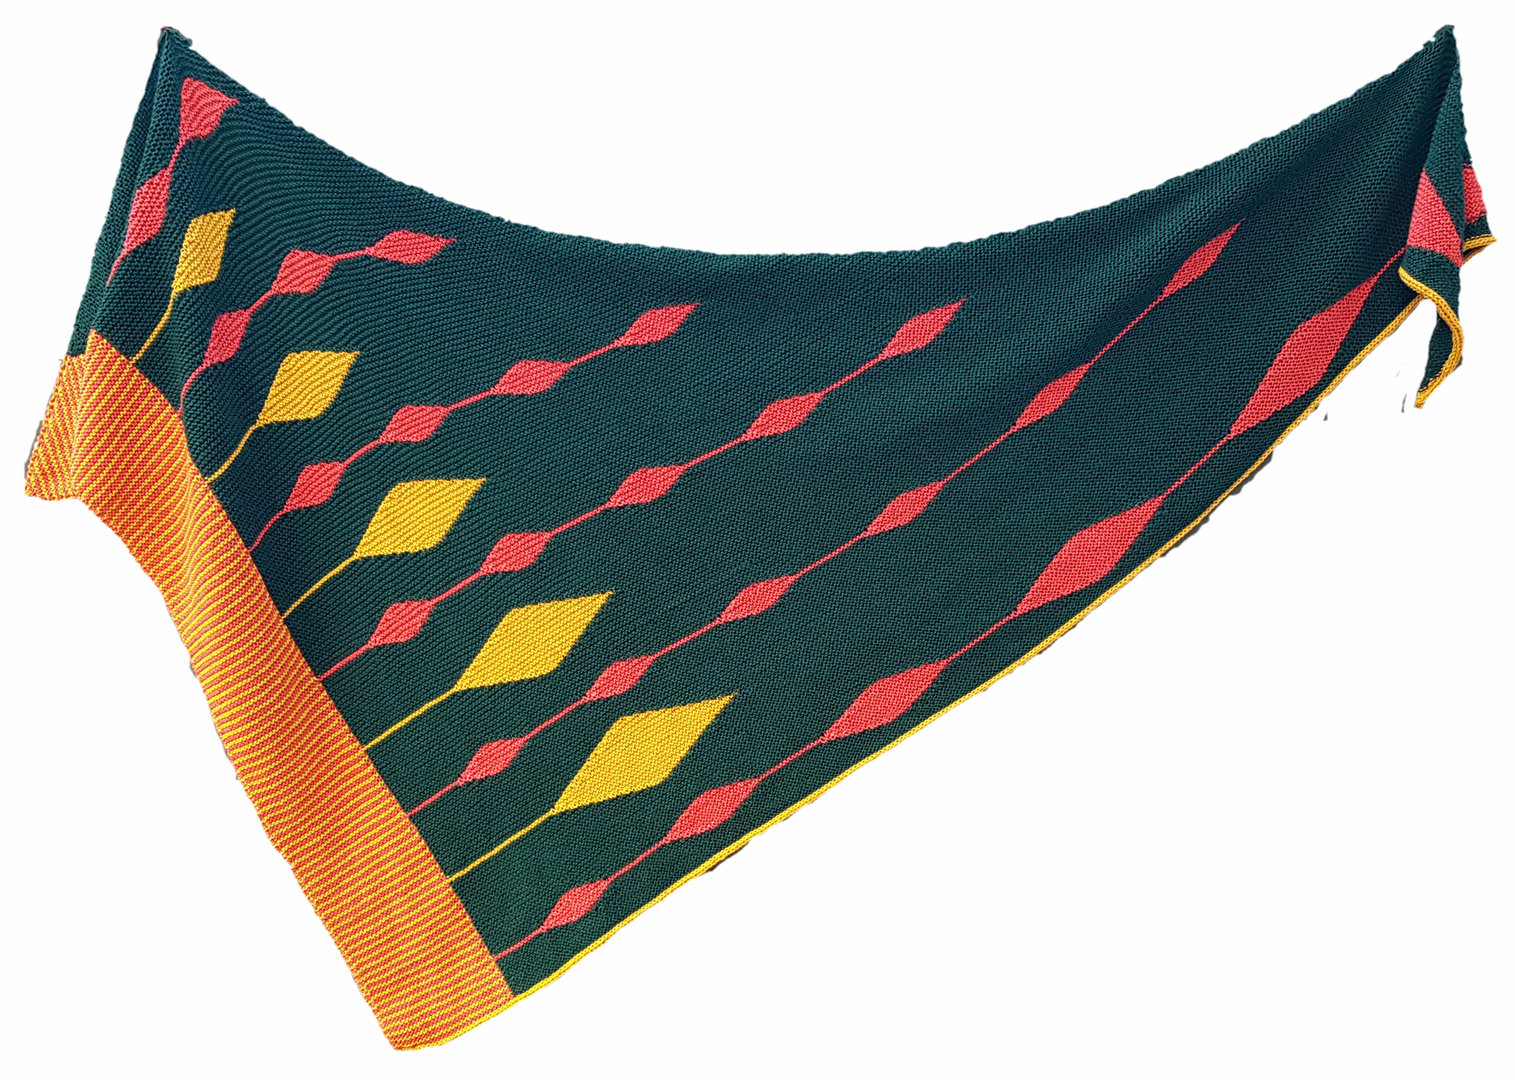 CANDLEFLAMES - Anleitung für ein dreifarbiges Tuch mit verkürzten Reihen